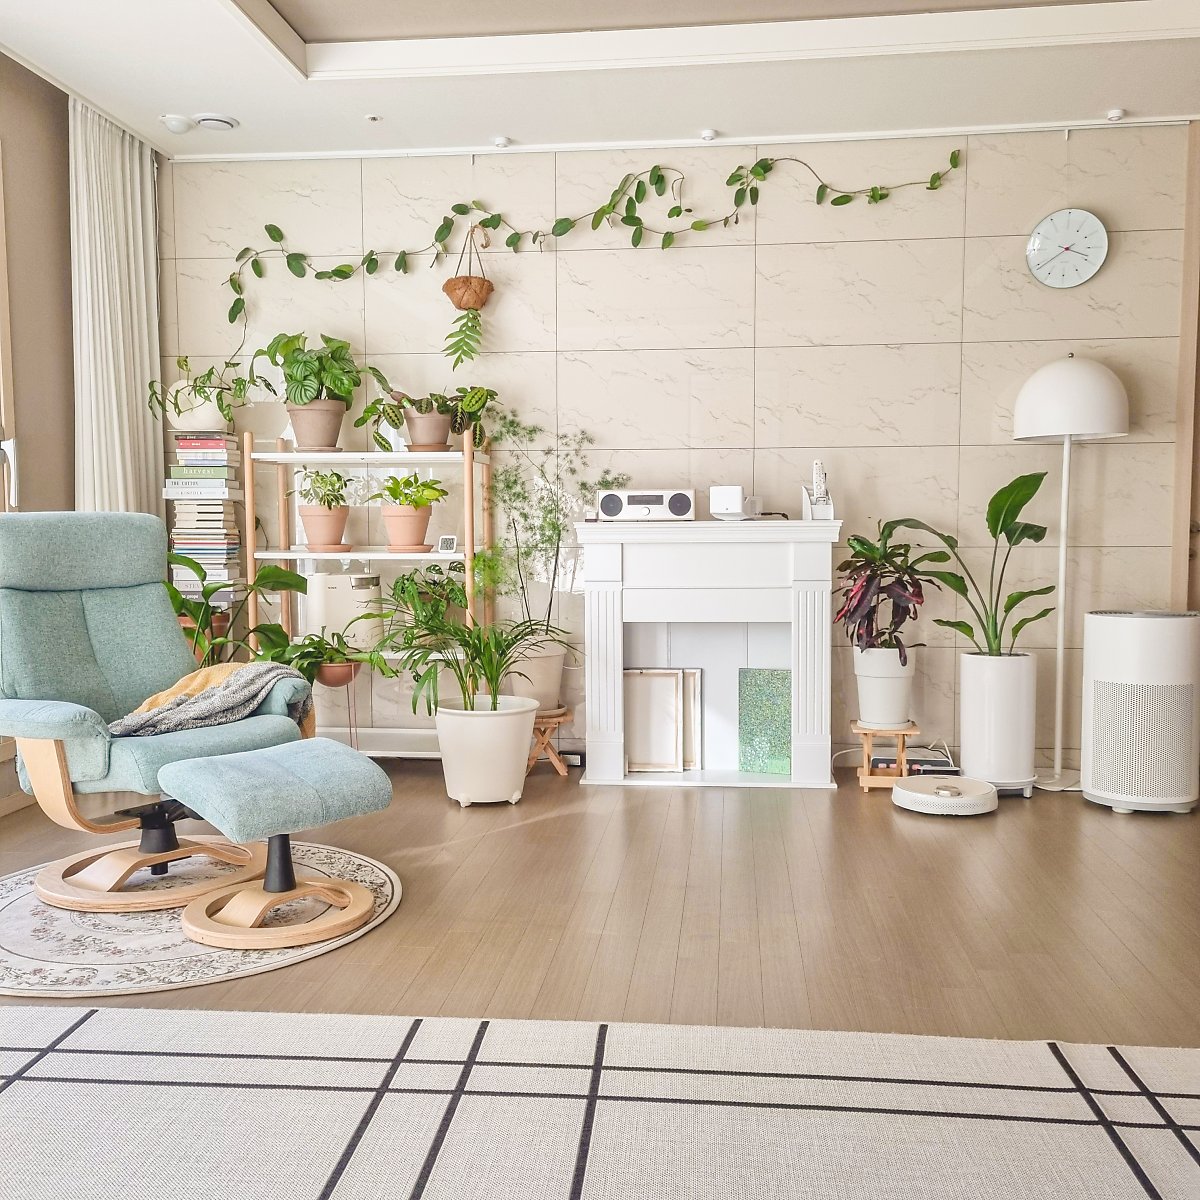 Thiết kế căn hộ theo phong cách tối giản, mẹ bỉm sữa Hàn Quốc biến phòng khách thành không gian vui chơi “đã đời” cho bé - Ảnh 3.